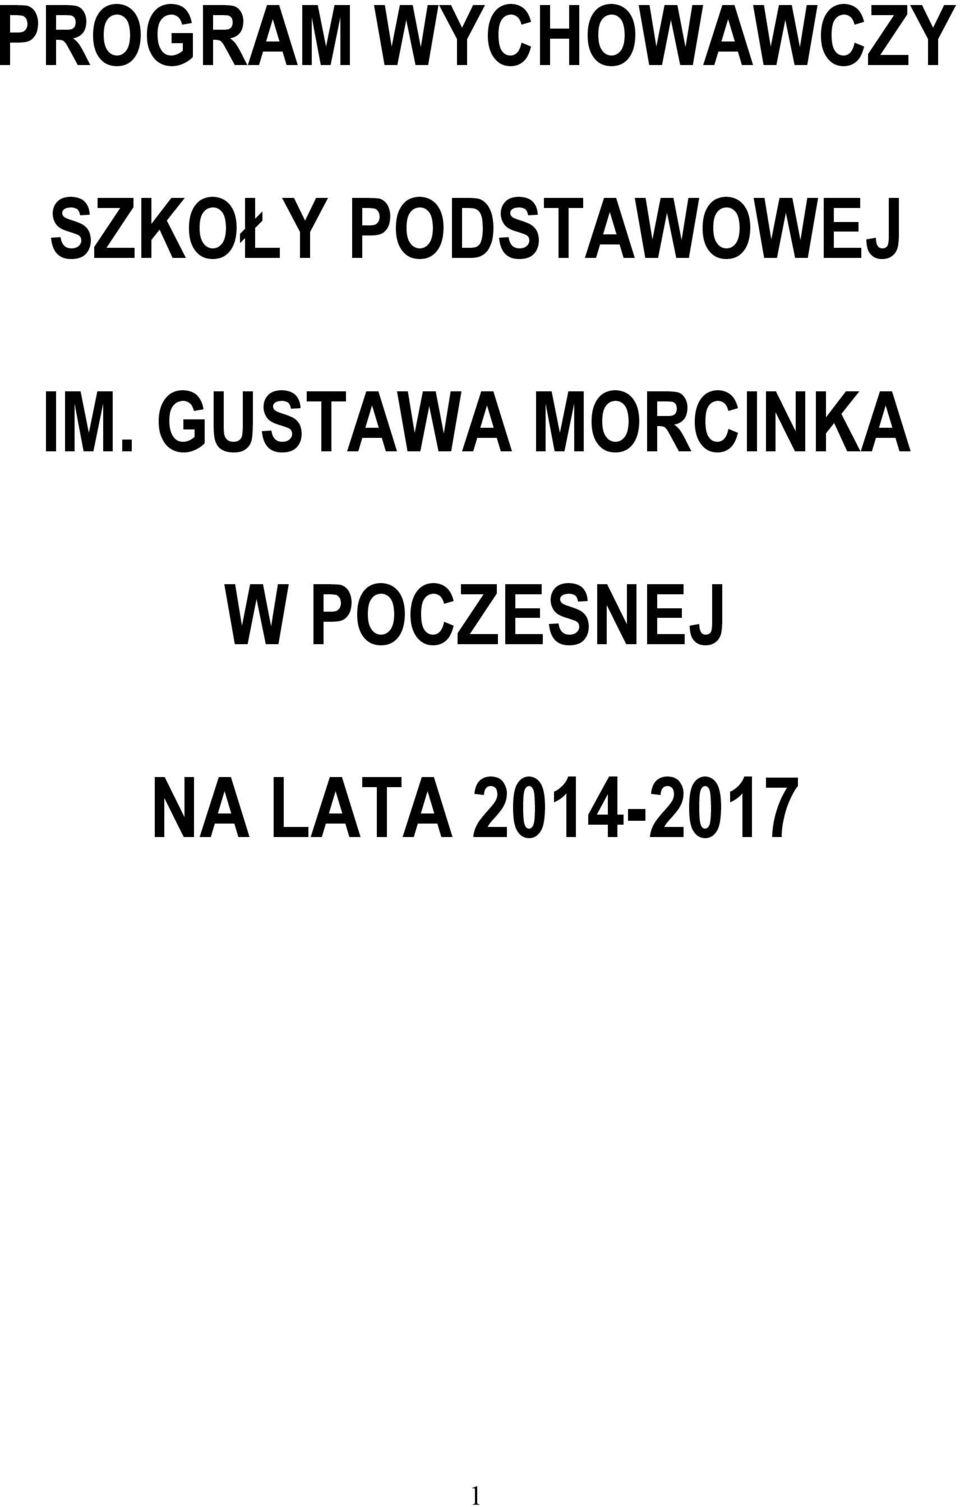 GUSTAWA MORCINKA W